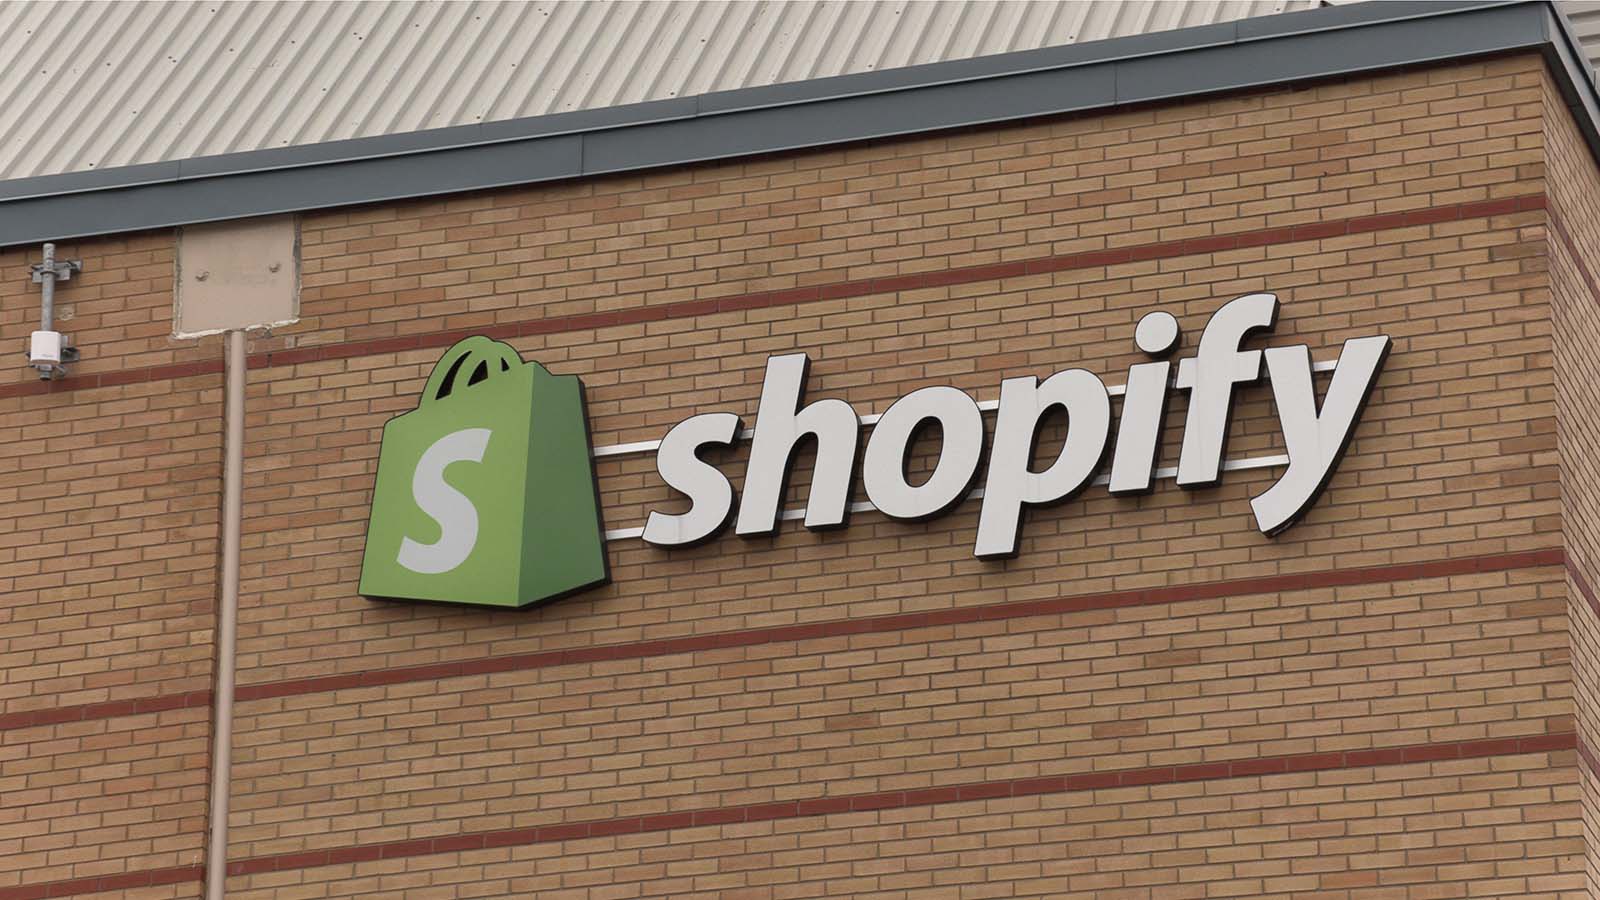 shopify logo sign on building facade